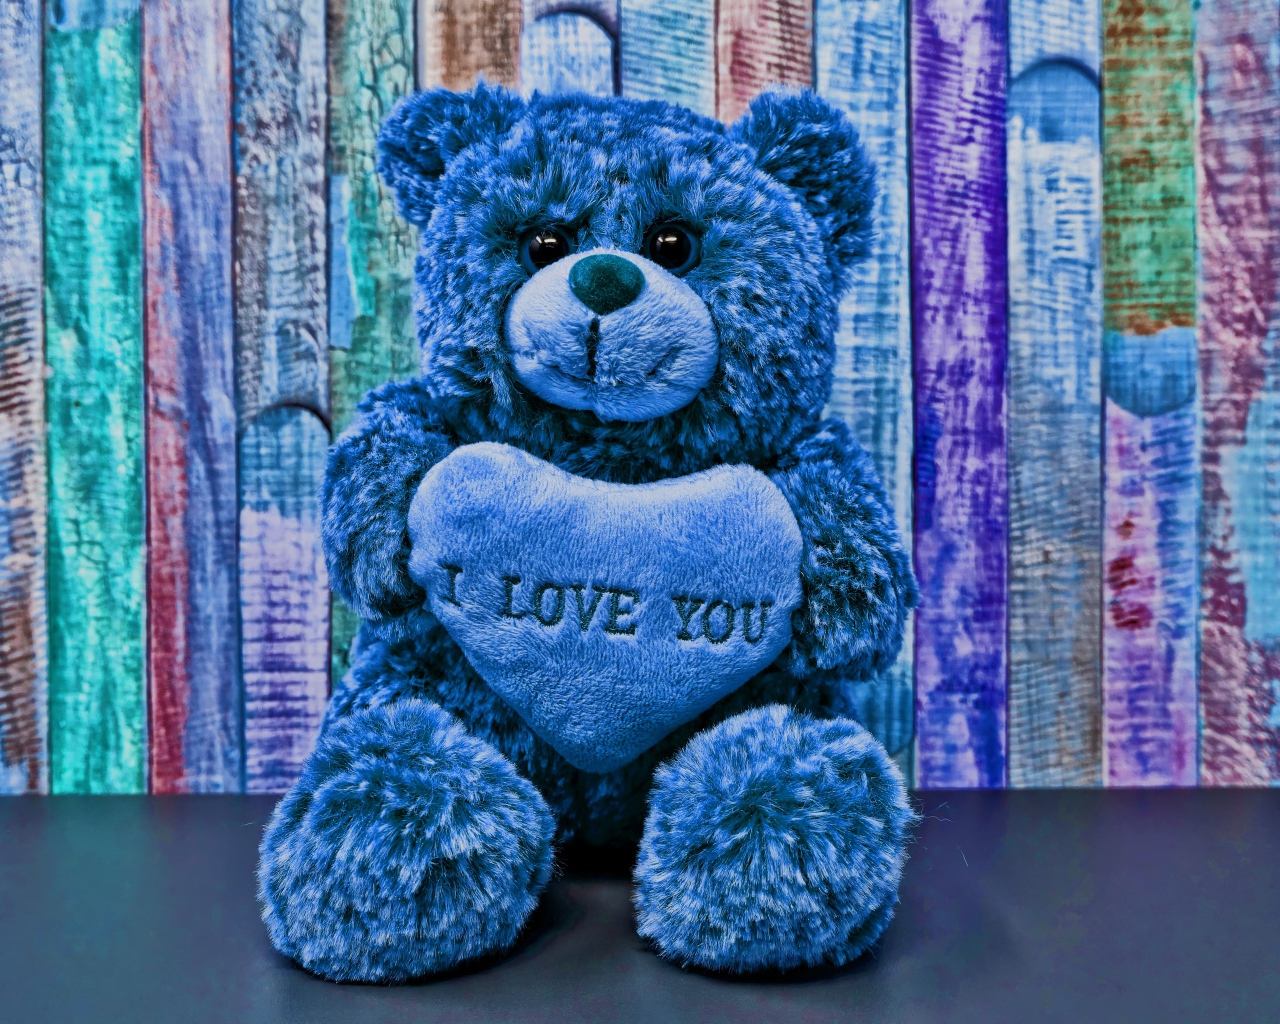 Синий медведь с сердцем на фоне забора